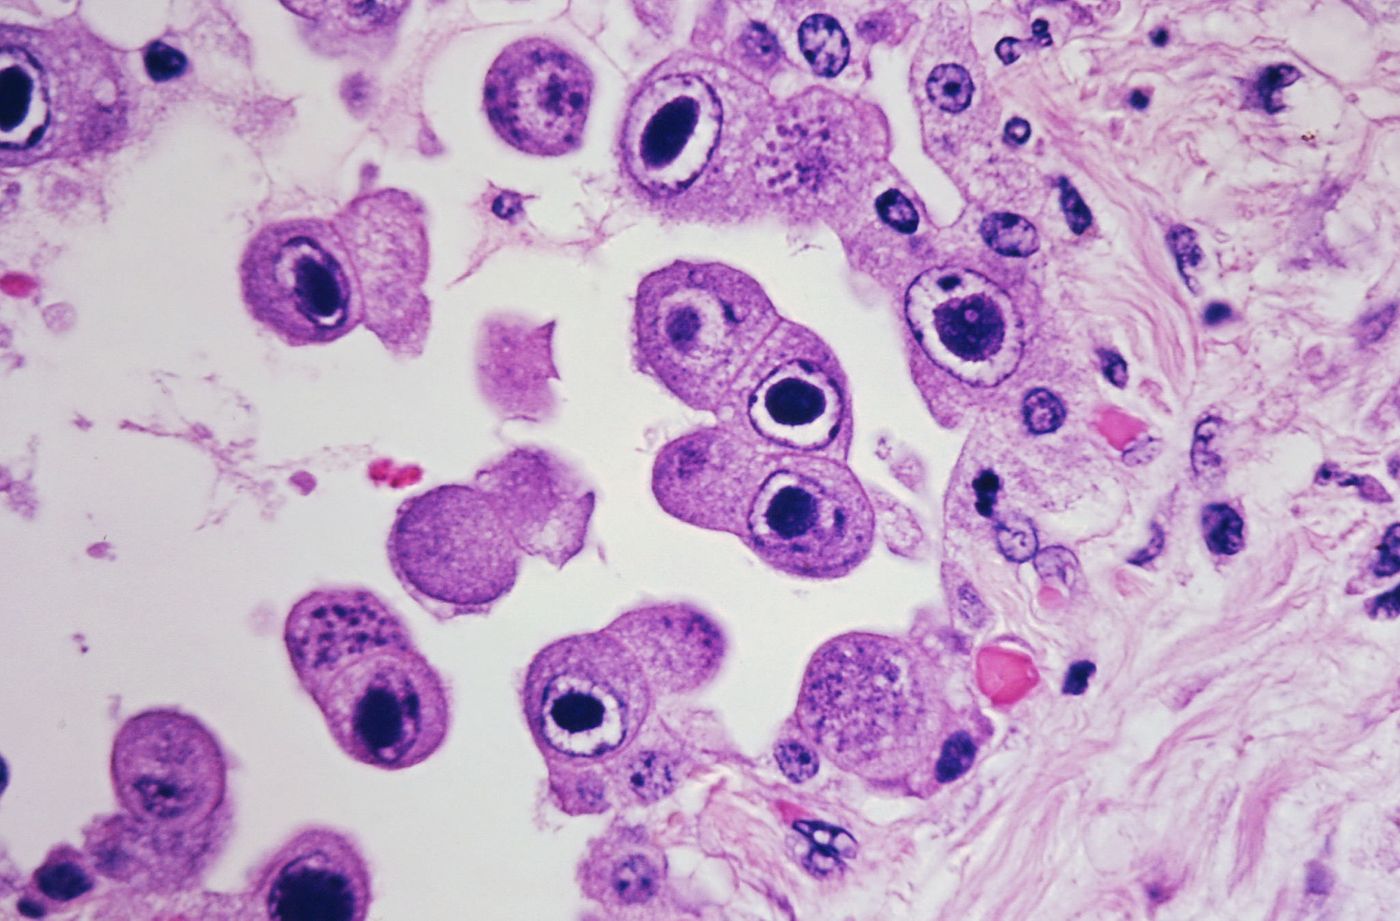 CMV infected pneumocytes. Source: Dr. Yale Rosen